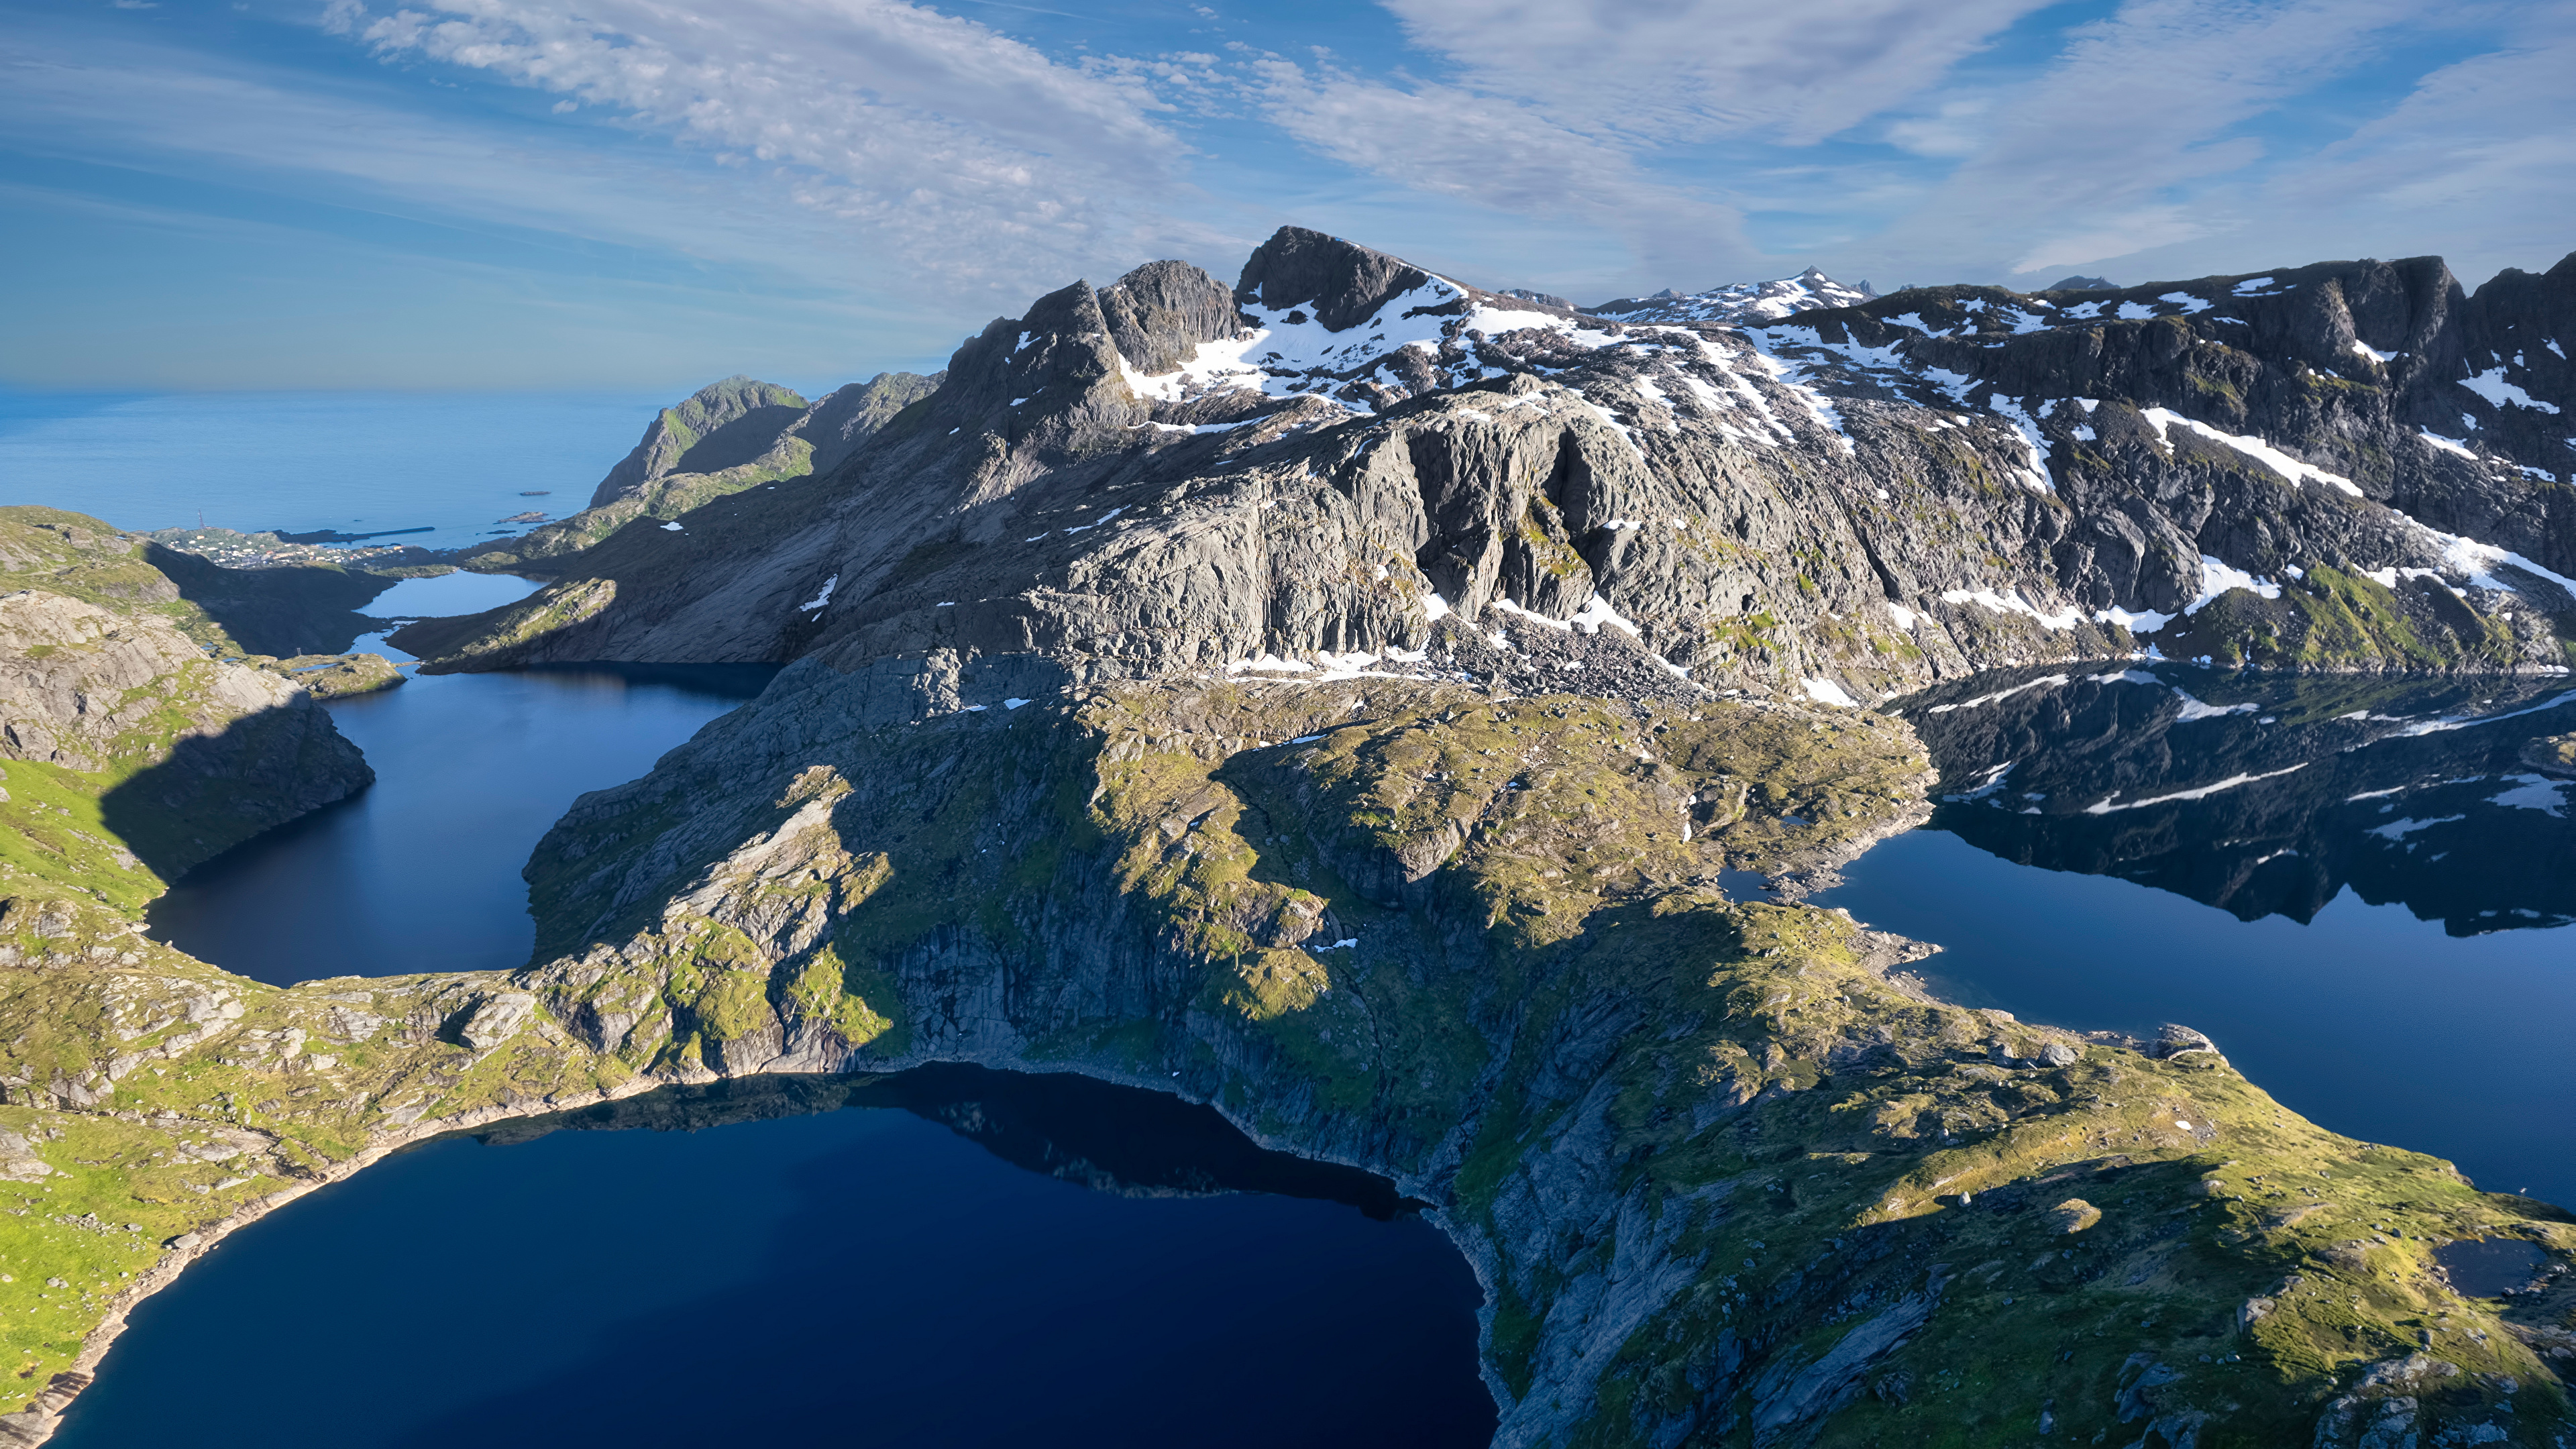 Обои для рабочего стола Лофотенские острова Норвегия Reine Горы Природа Озеро 3840x2160 гора